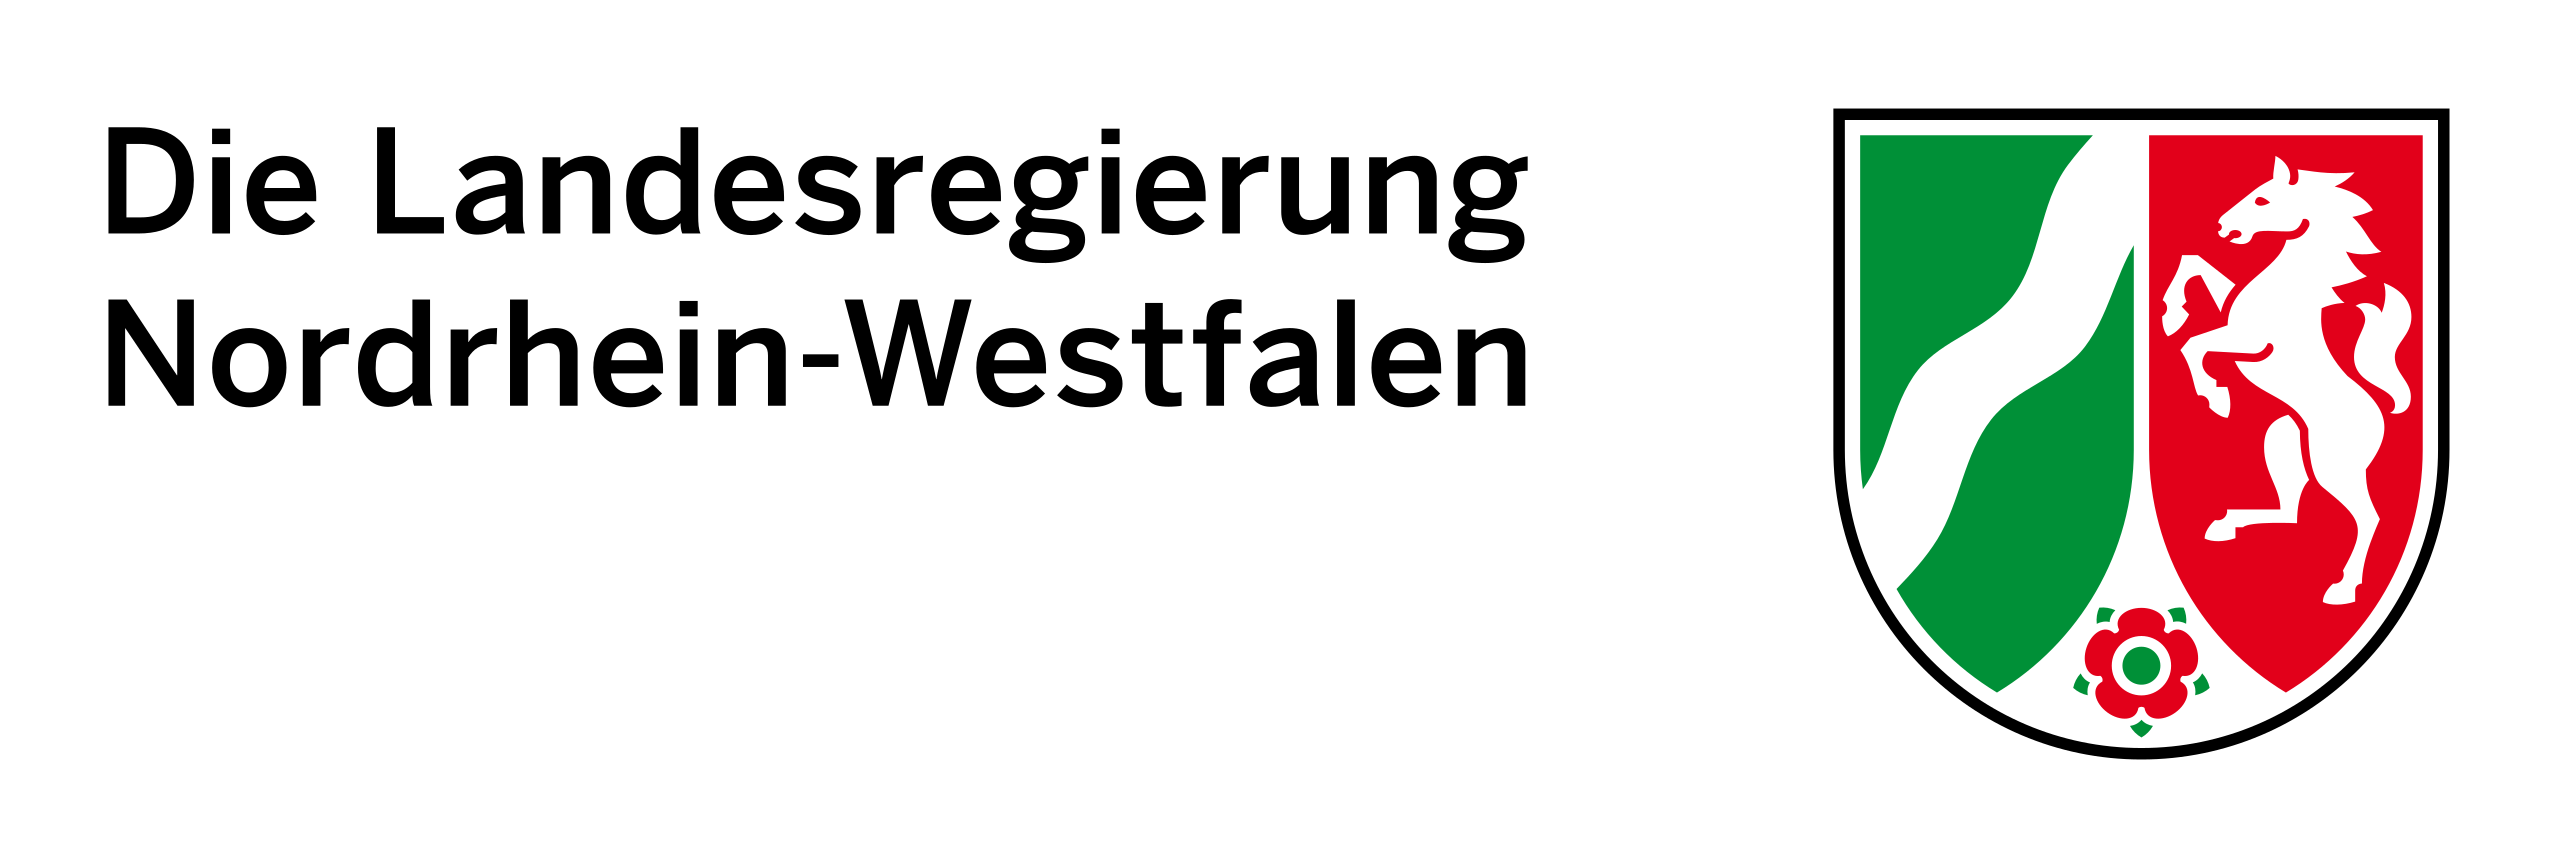 Die Landesregierung Nordrhein-Westfalen Logo